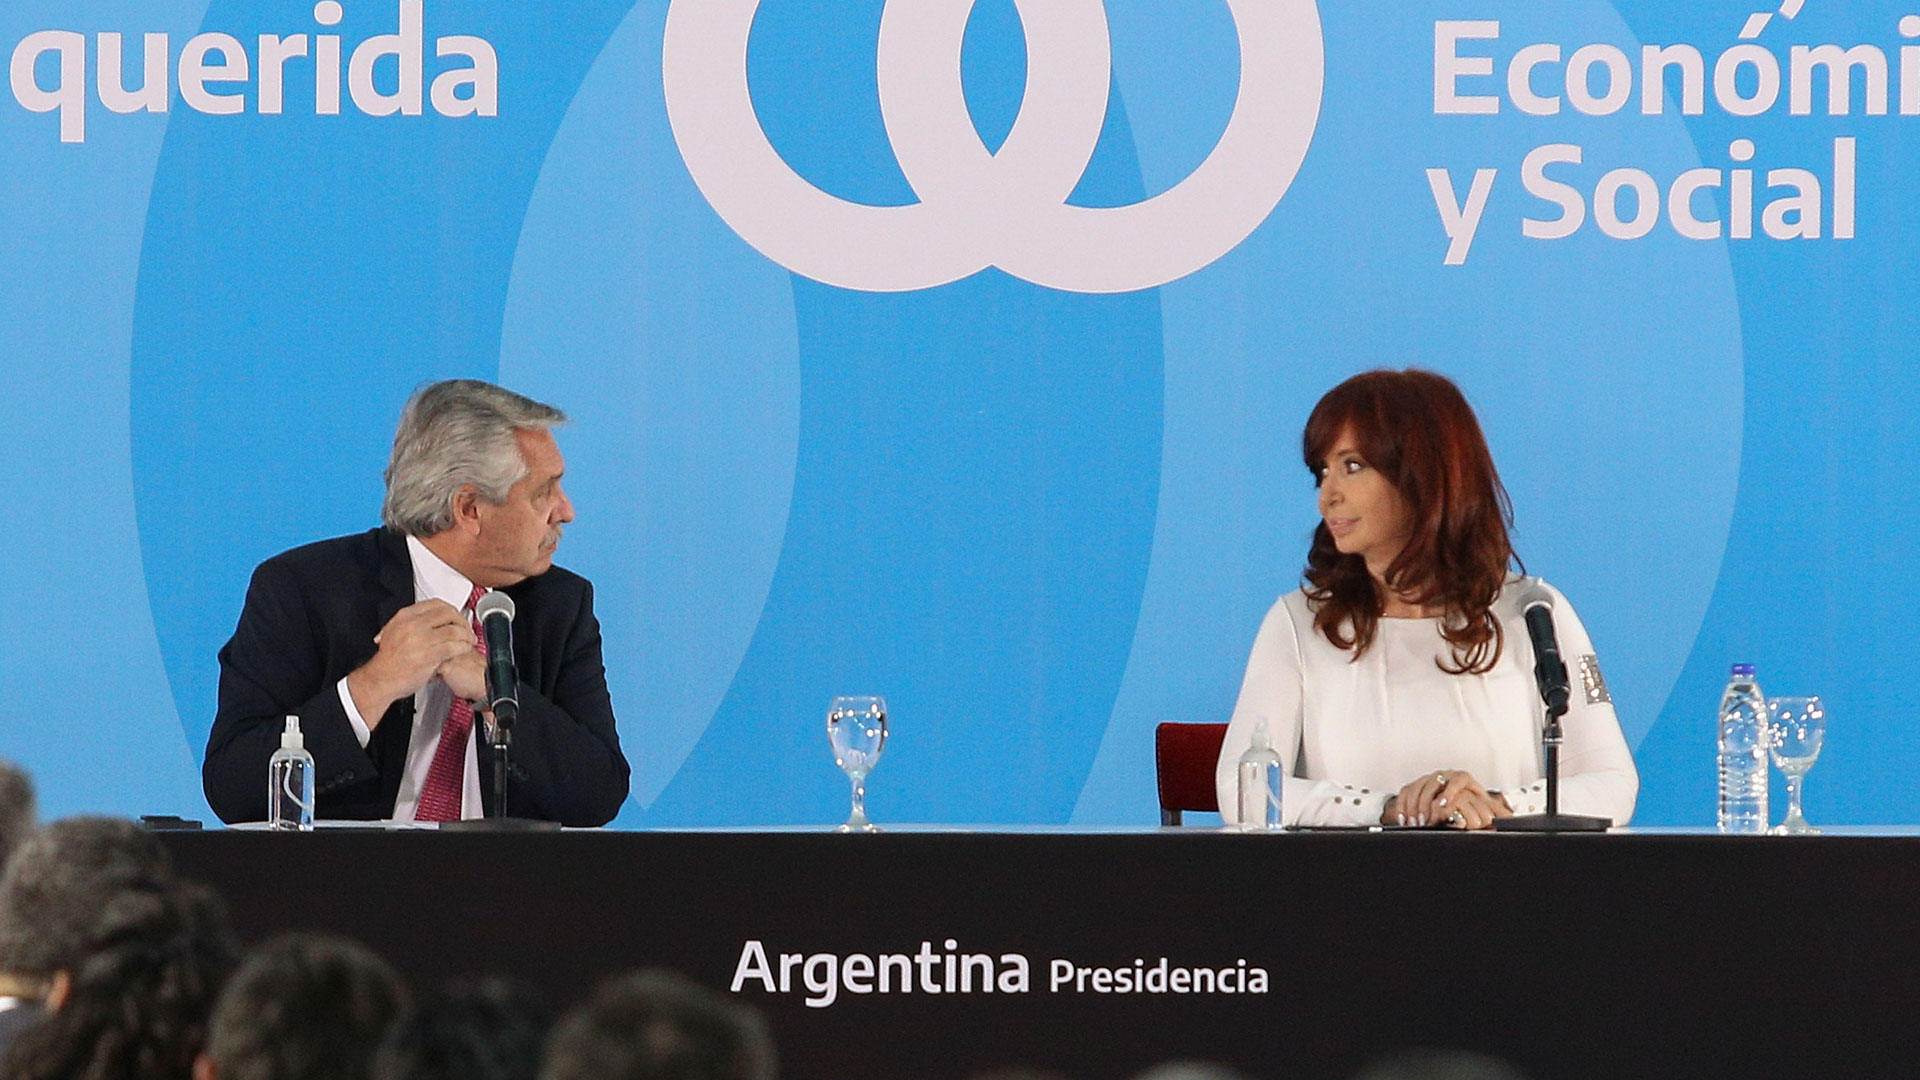 El diálogo entre Alberto Fernández y Cristina Kirchner sigue cortado (NA)
